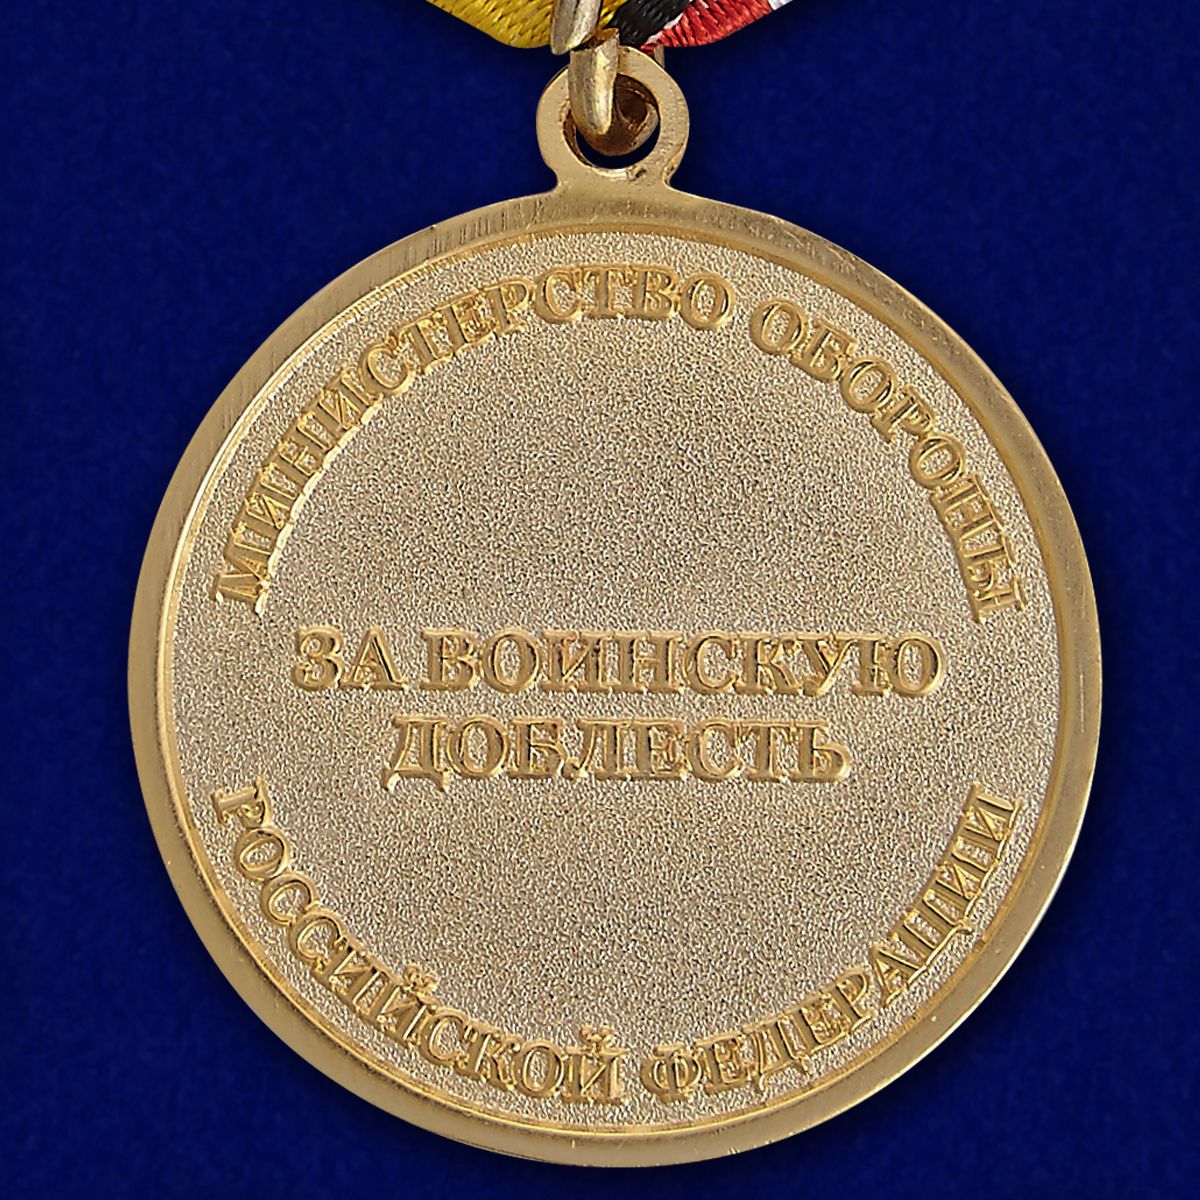 Медаль МО РФ "За воинскую доблесть" (1 степень) 